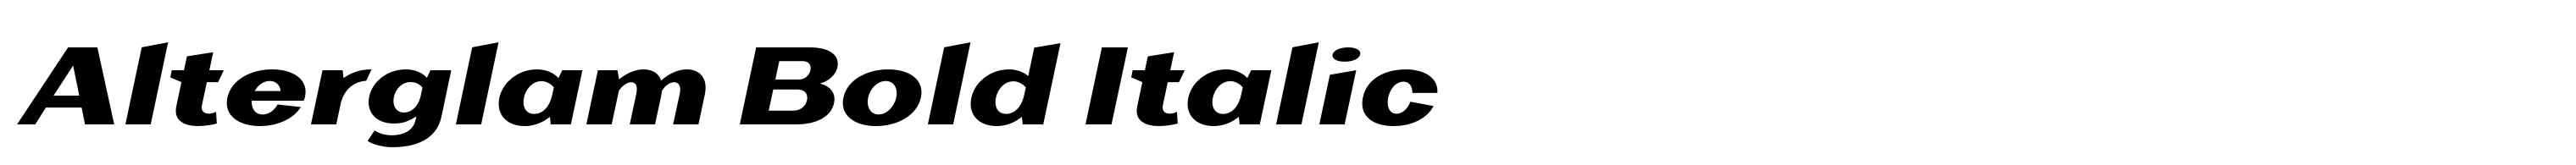 Alterglam Bold Italic